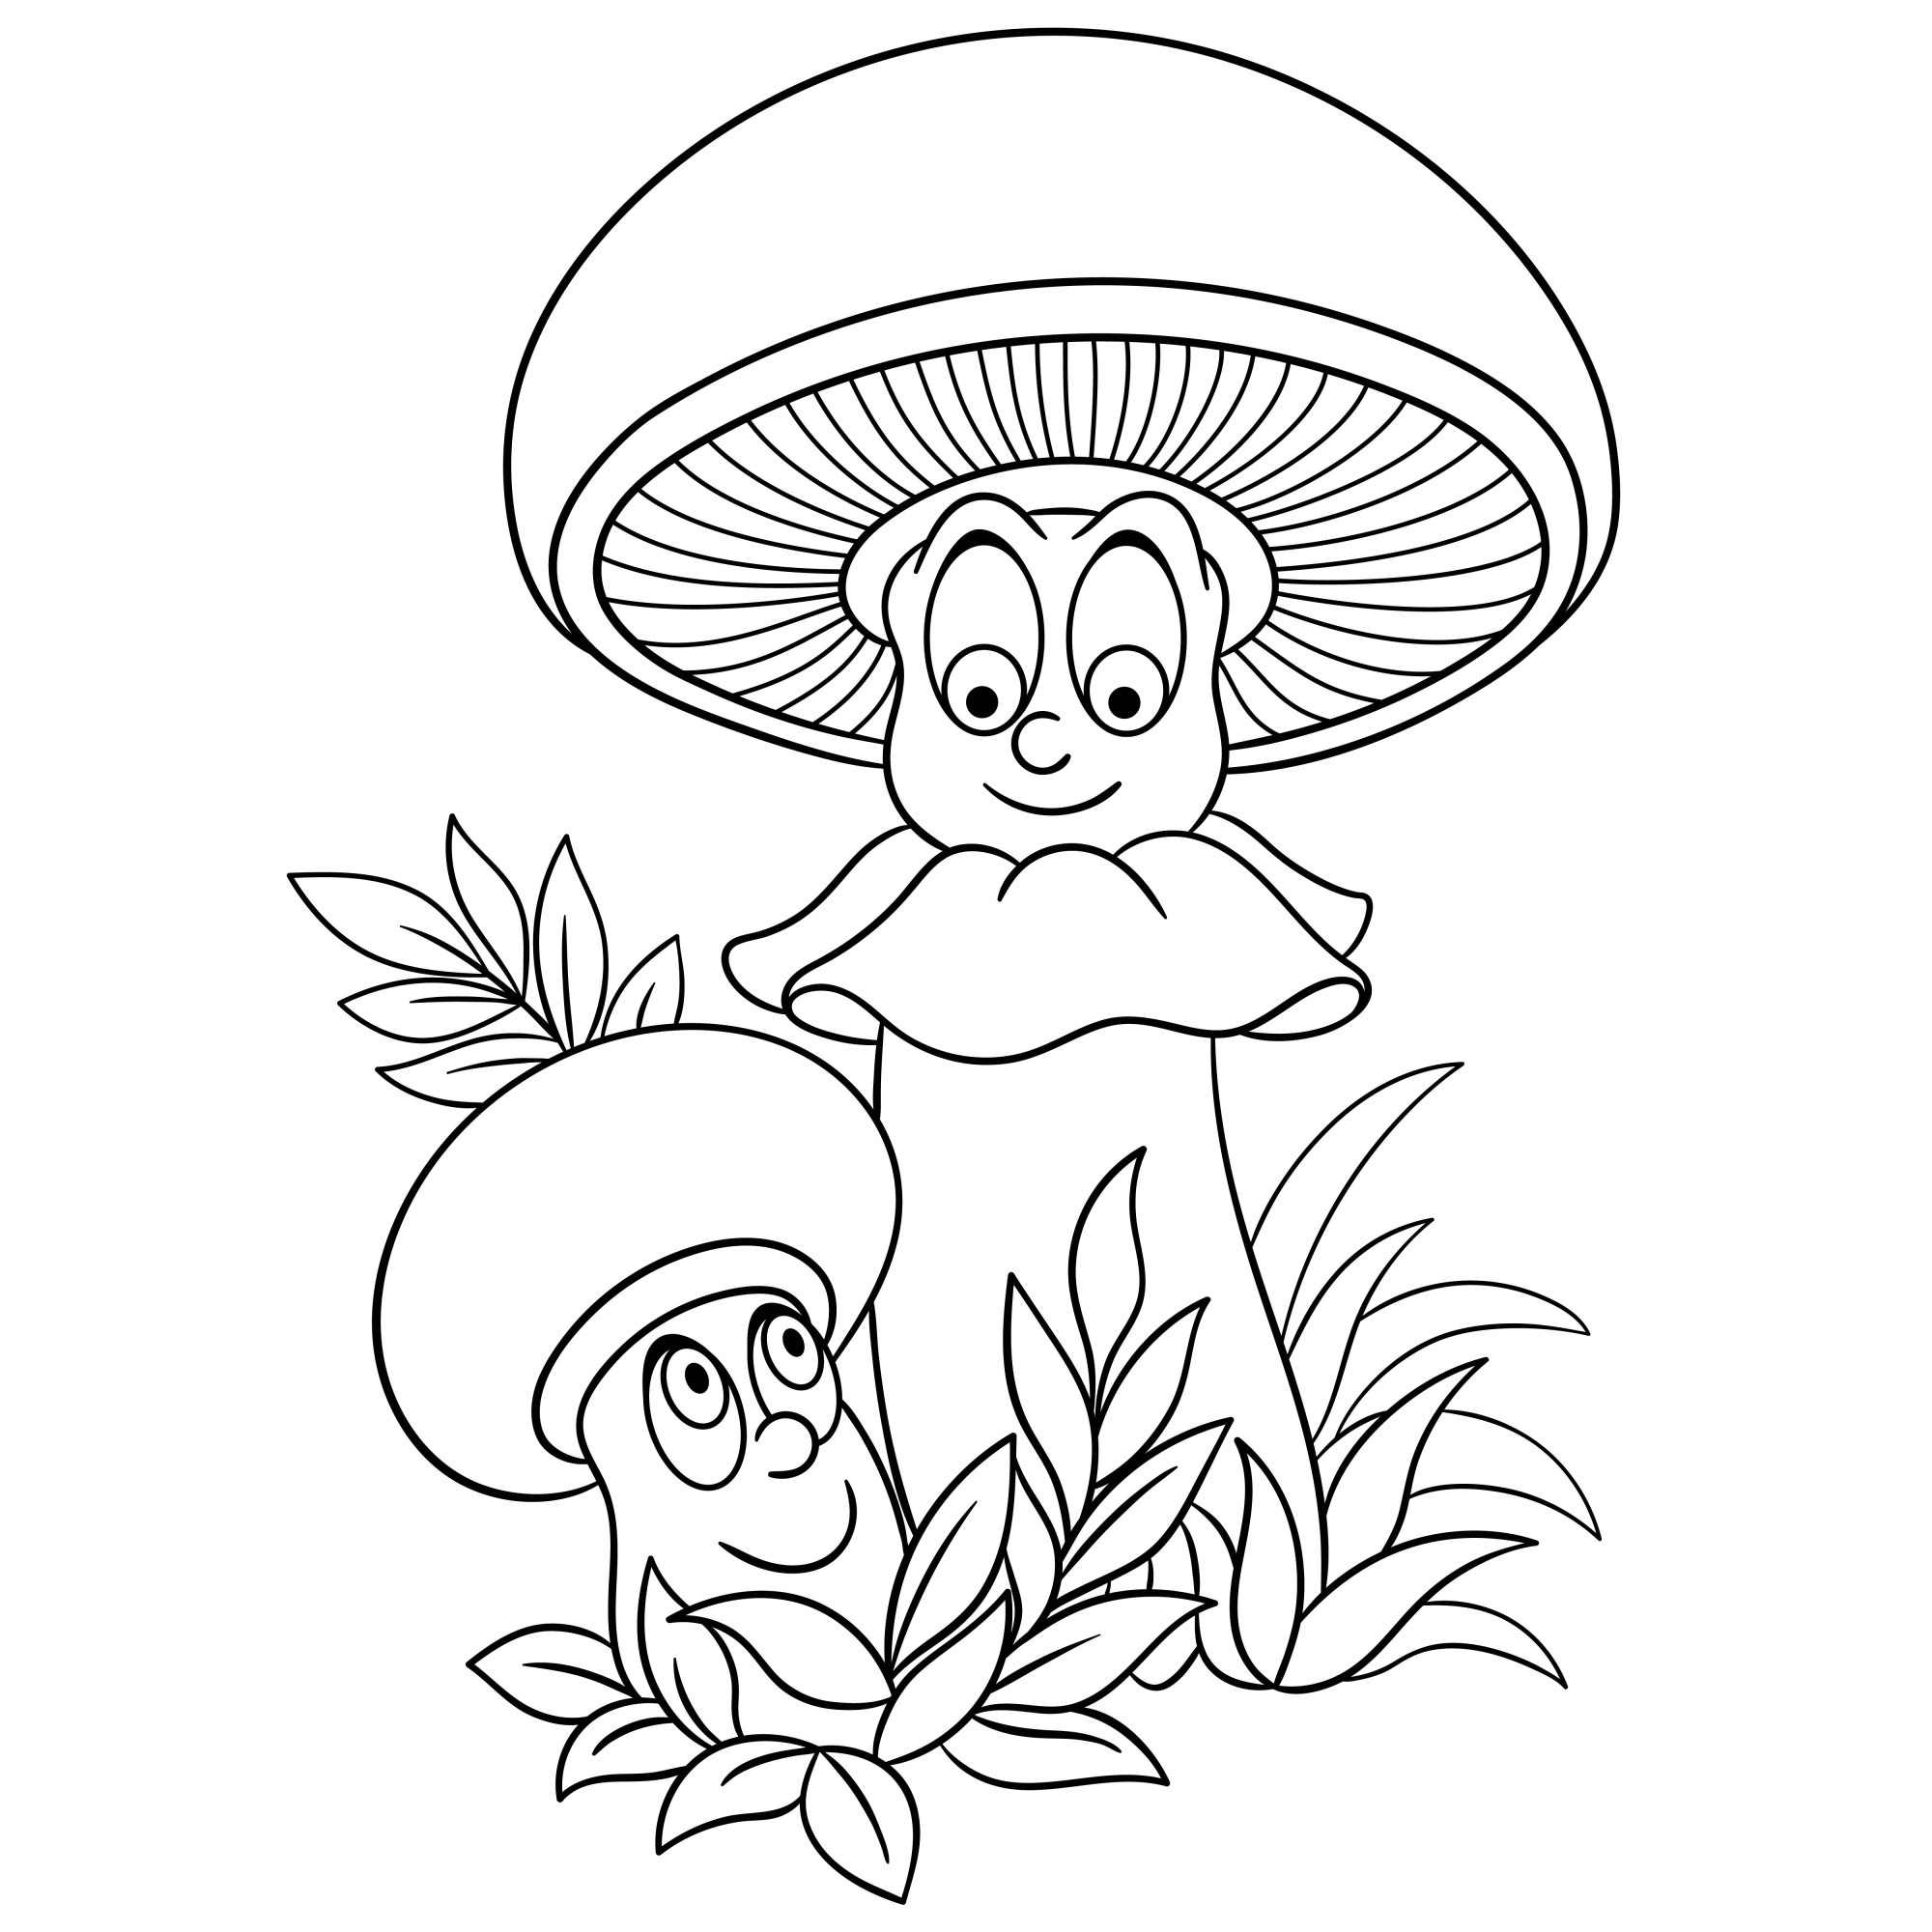 Раскраска для детей: грибы с глазами в траве